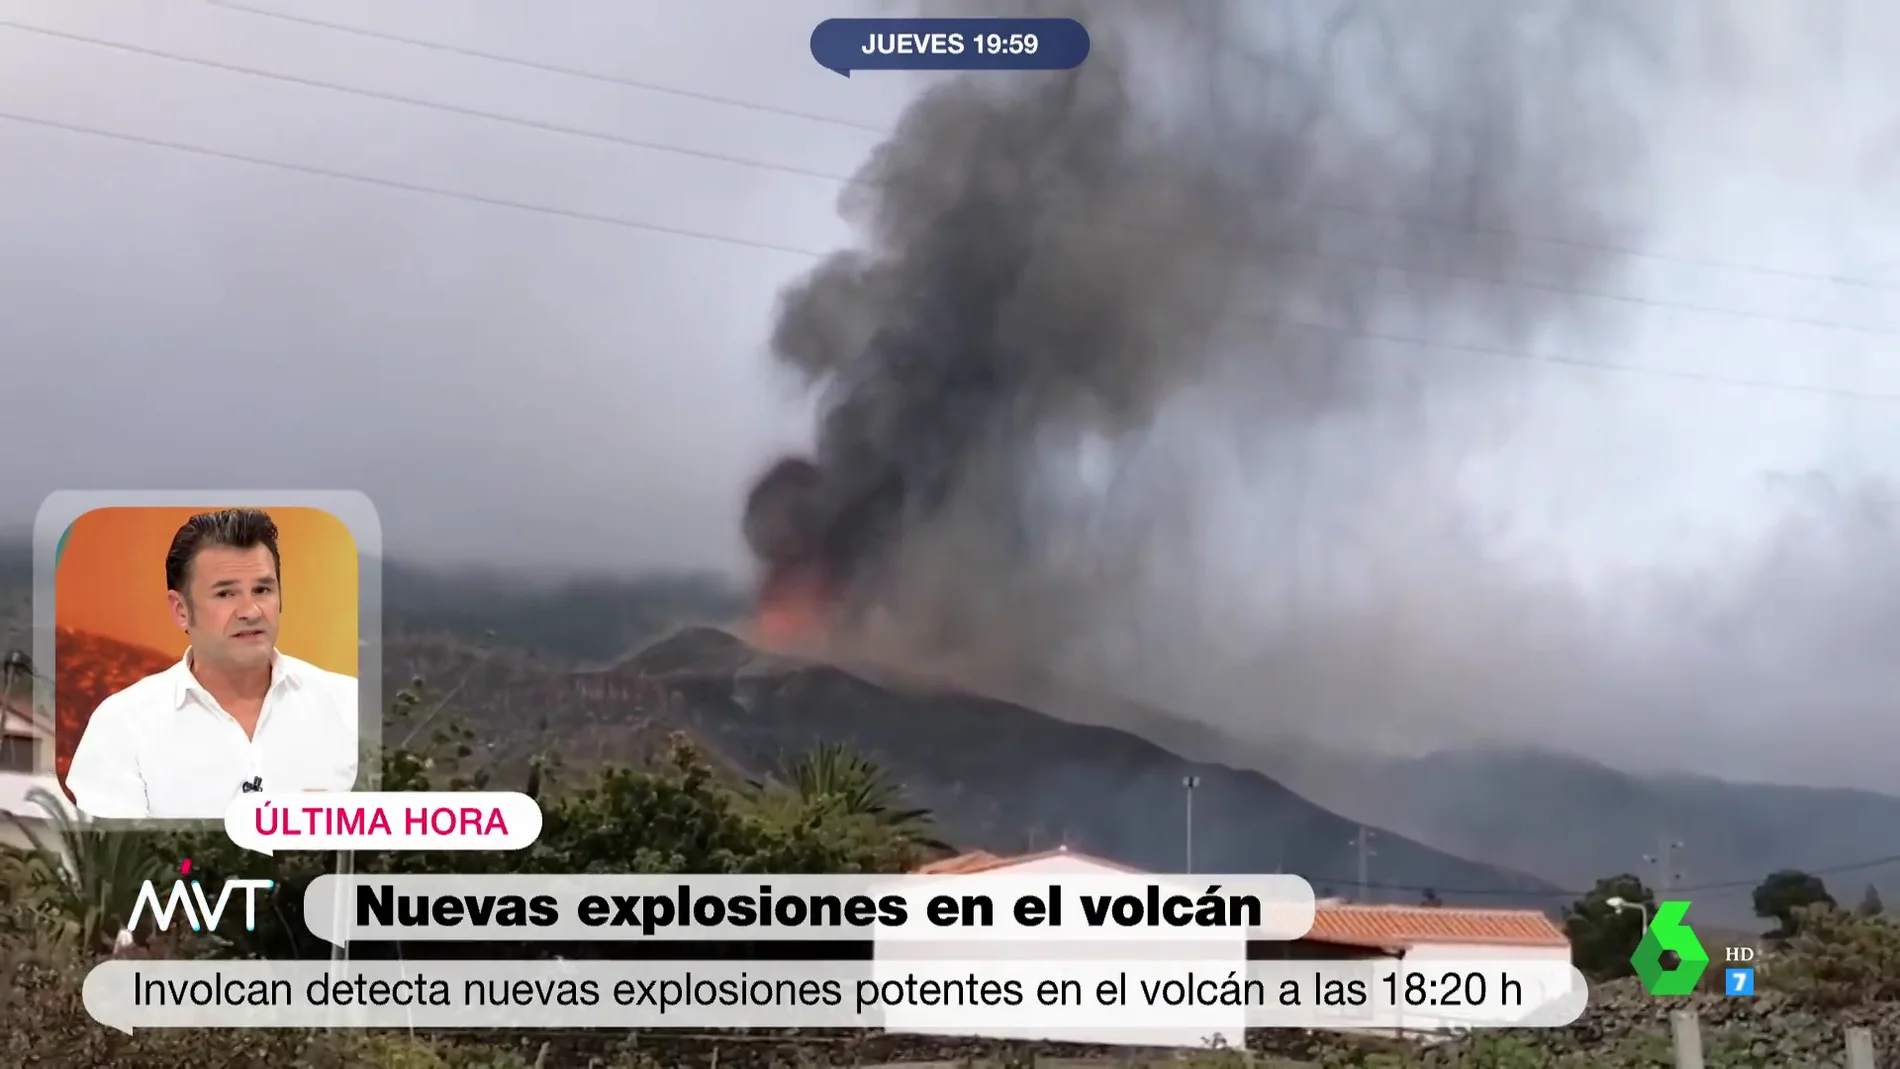 El alegato de Iñaki López en favor de la investigación: "En La Palma no ha habido víctimas mortales ni heridos gracias a la ciencia"